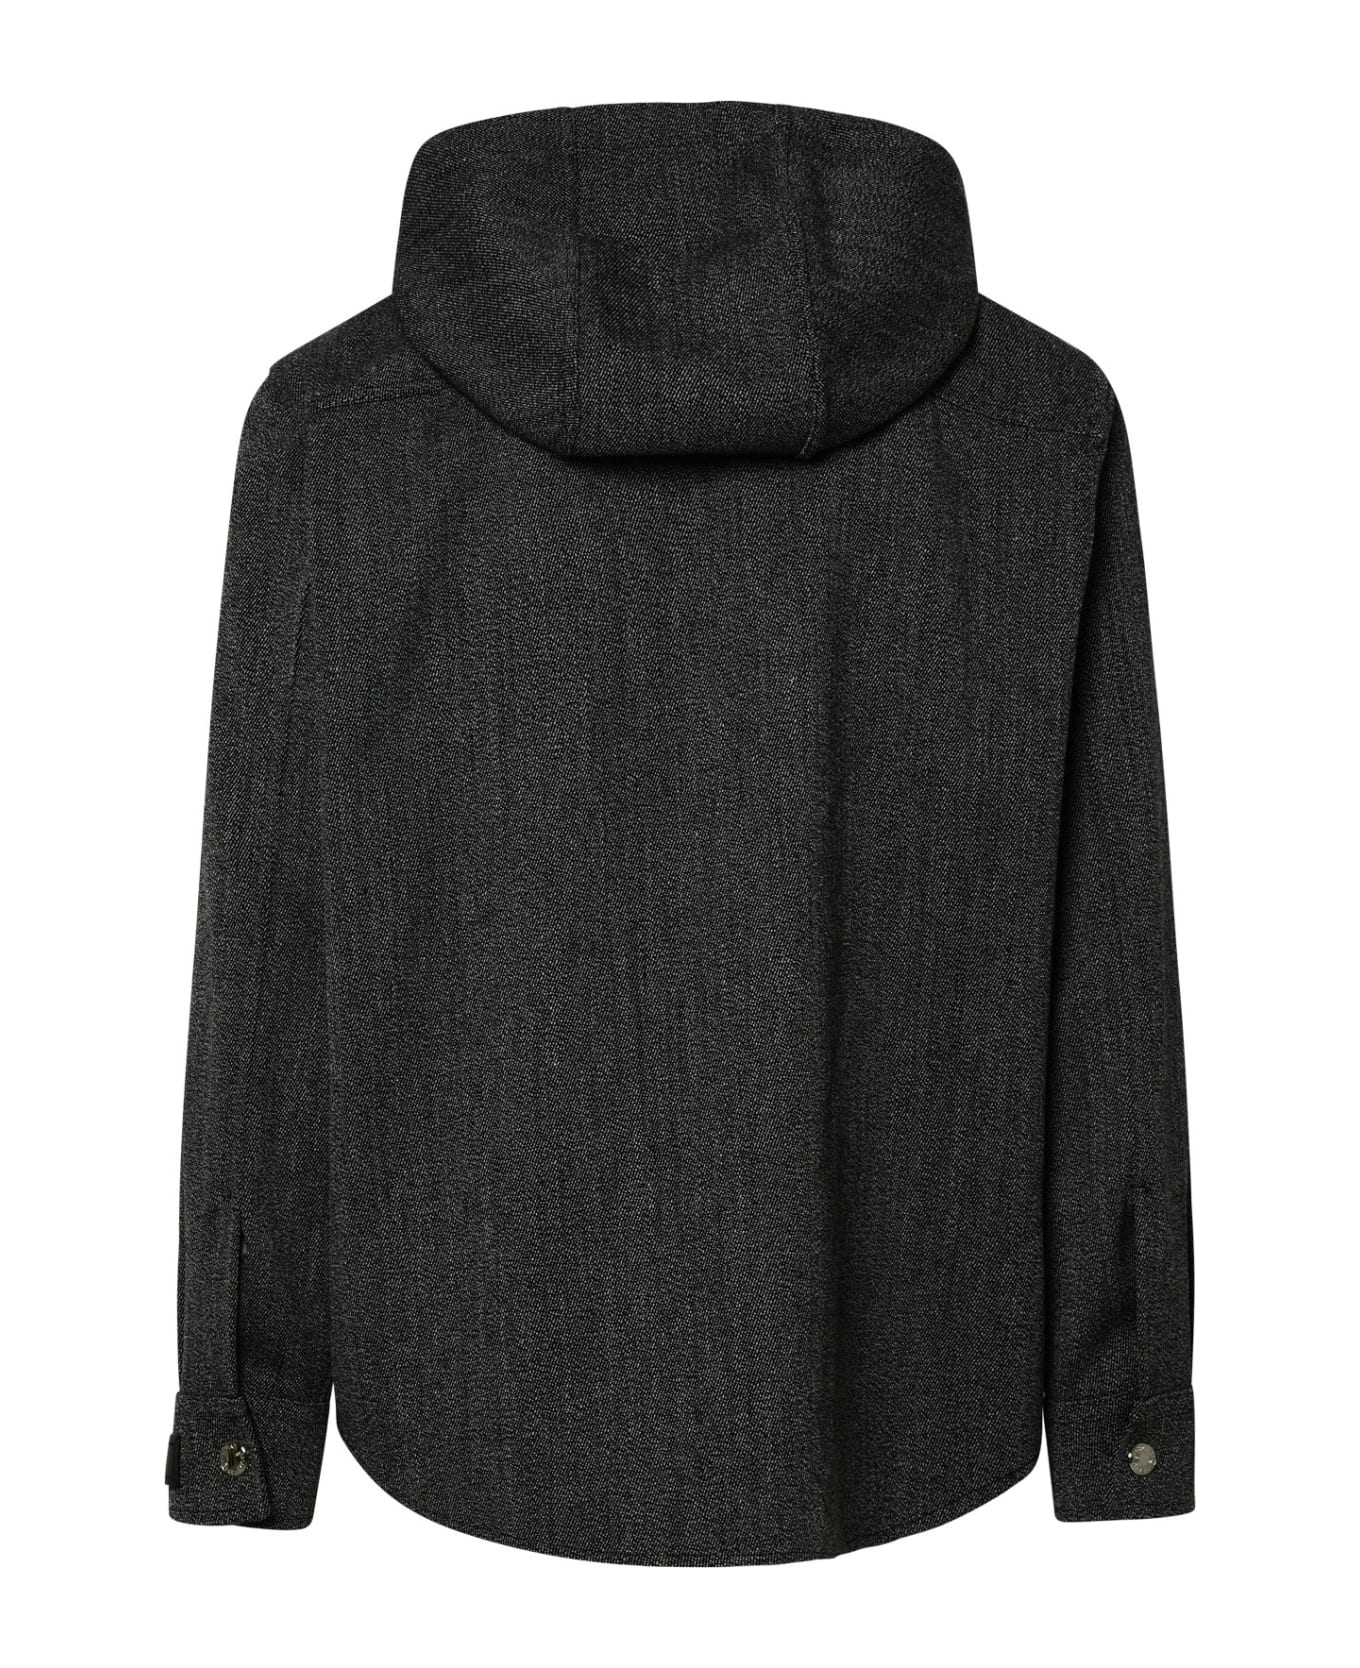 Versace Black Virgin Wool Jacket - Black